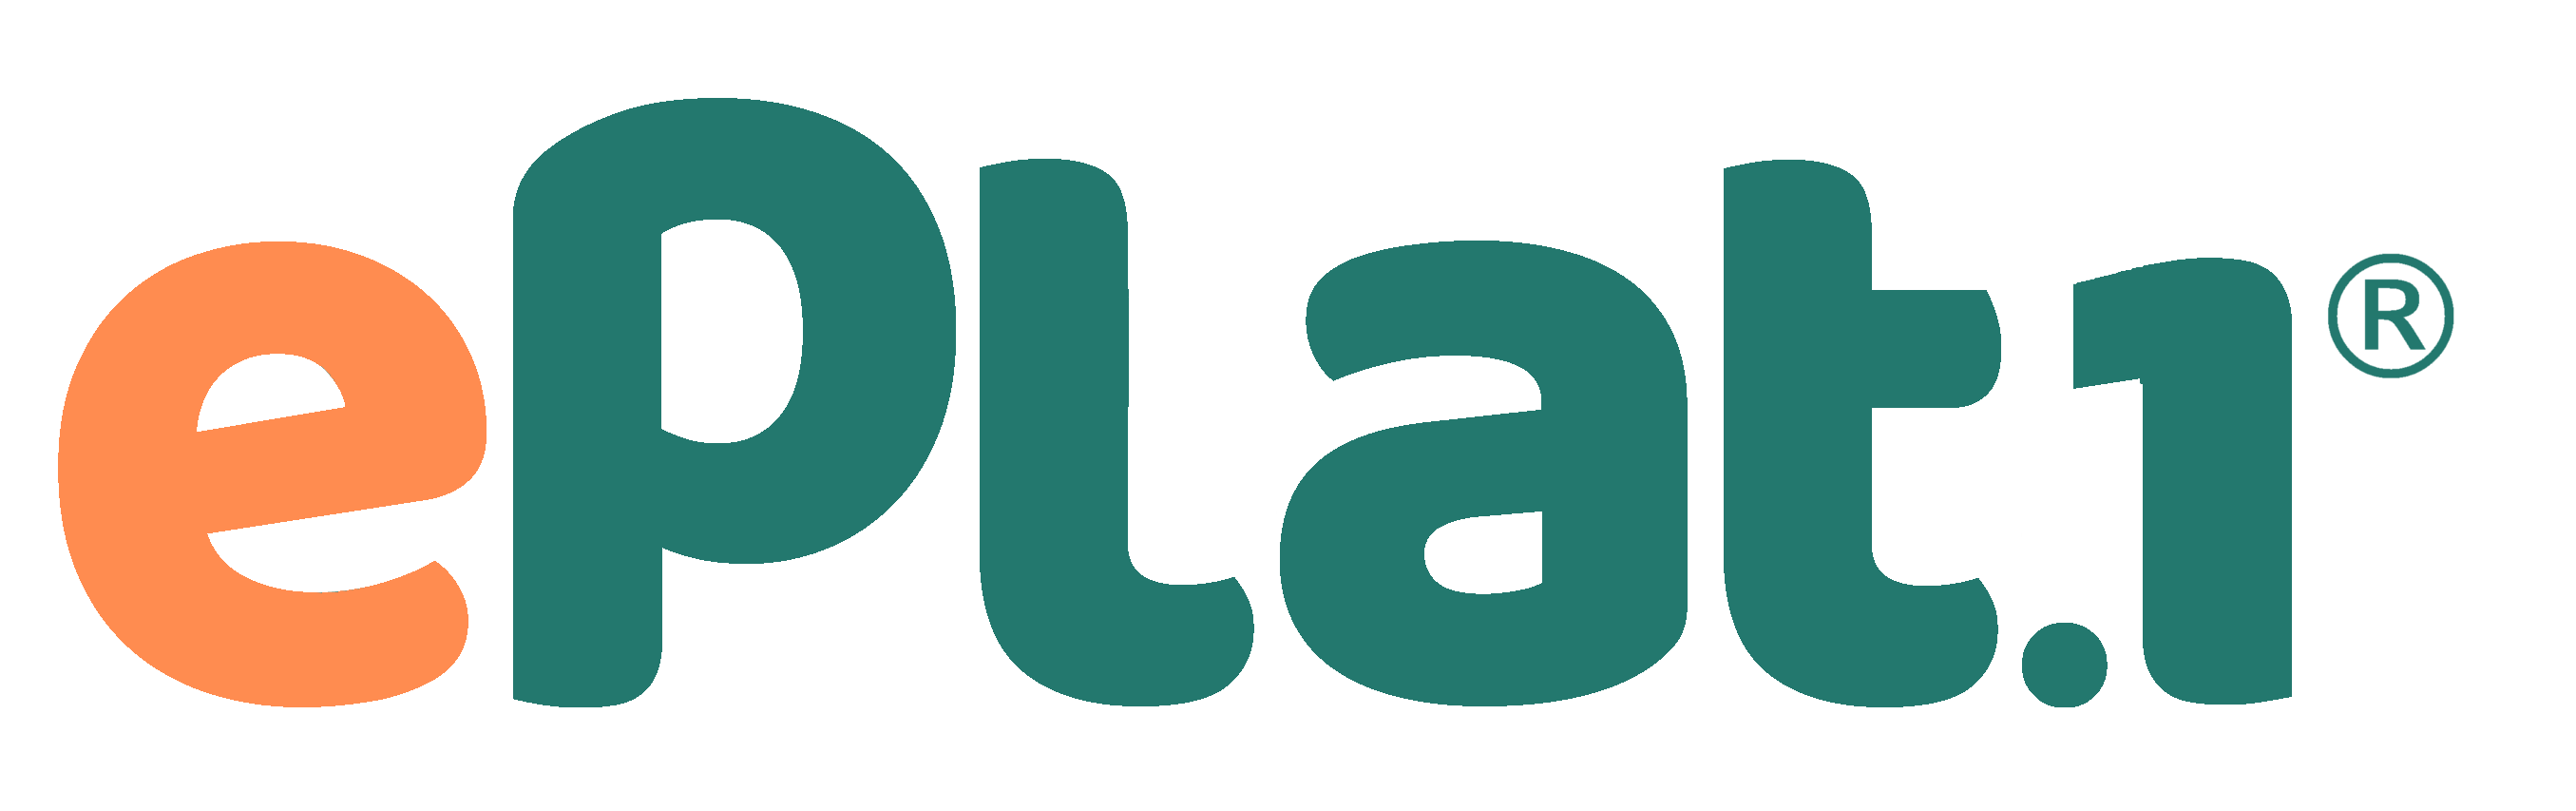 Logo ePlat1